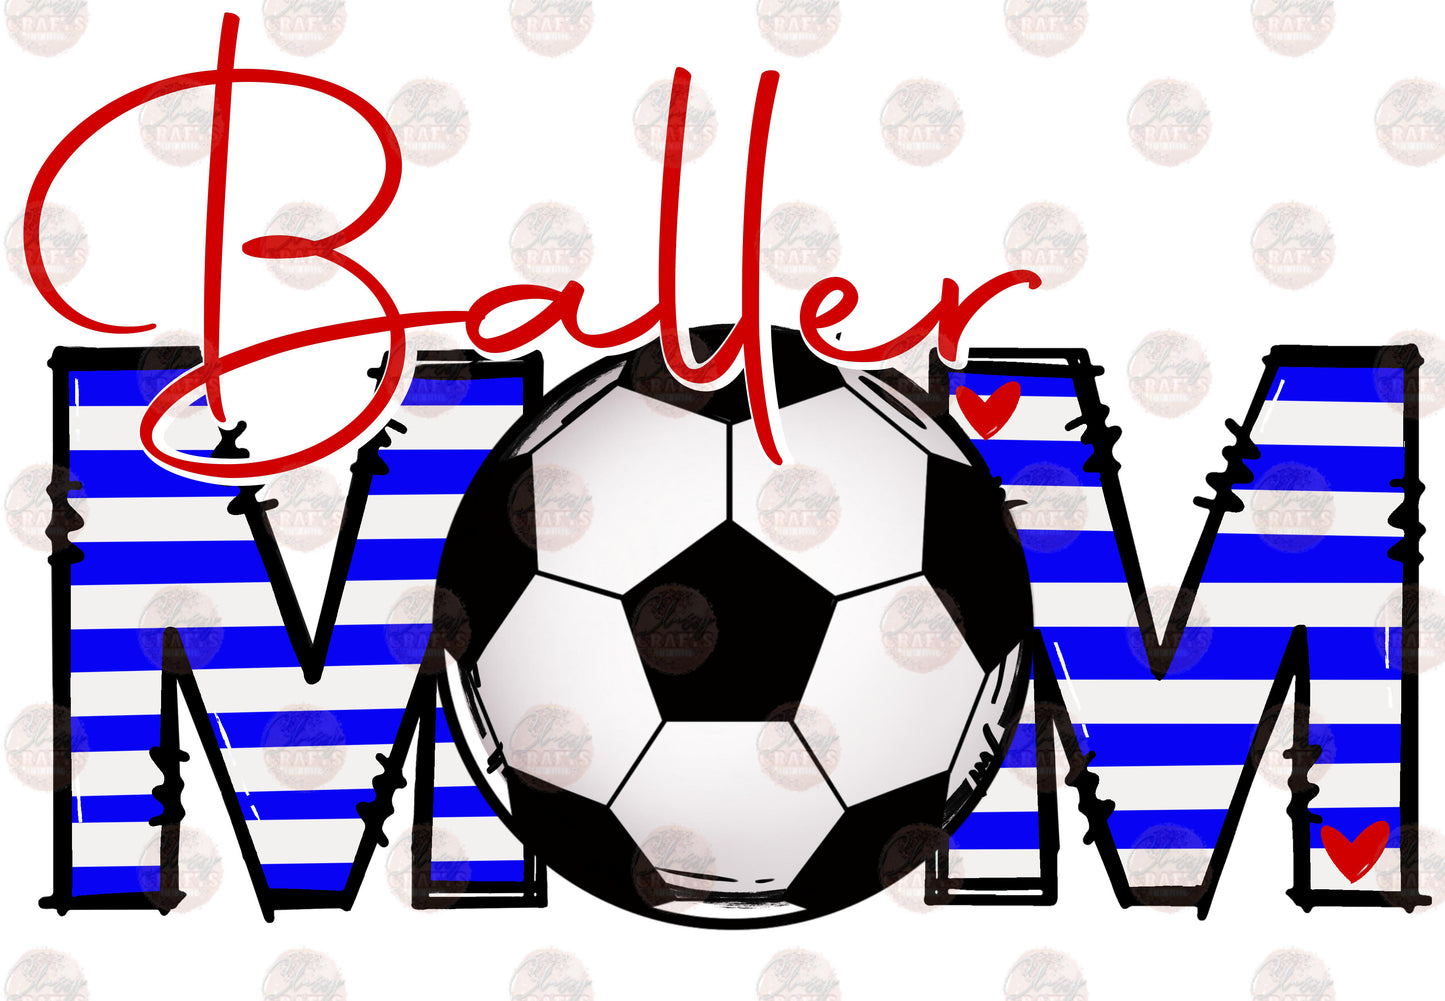 Baller Mom Soccer Transfer